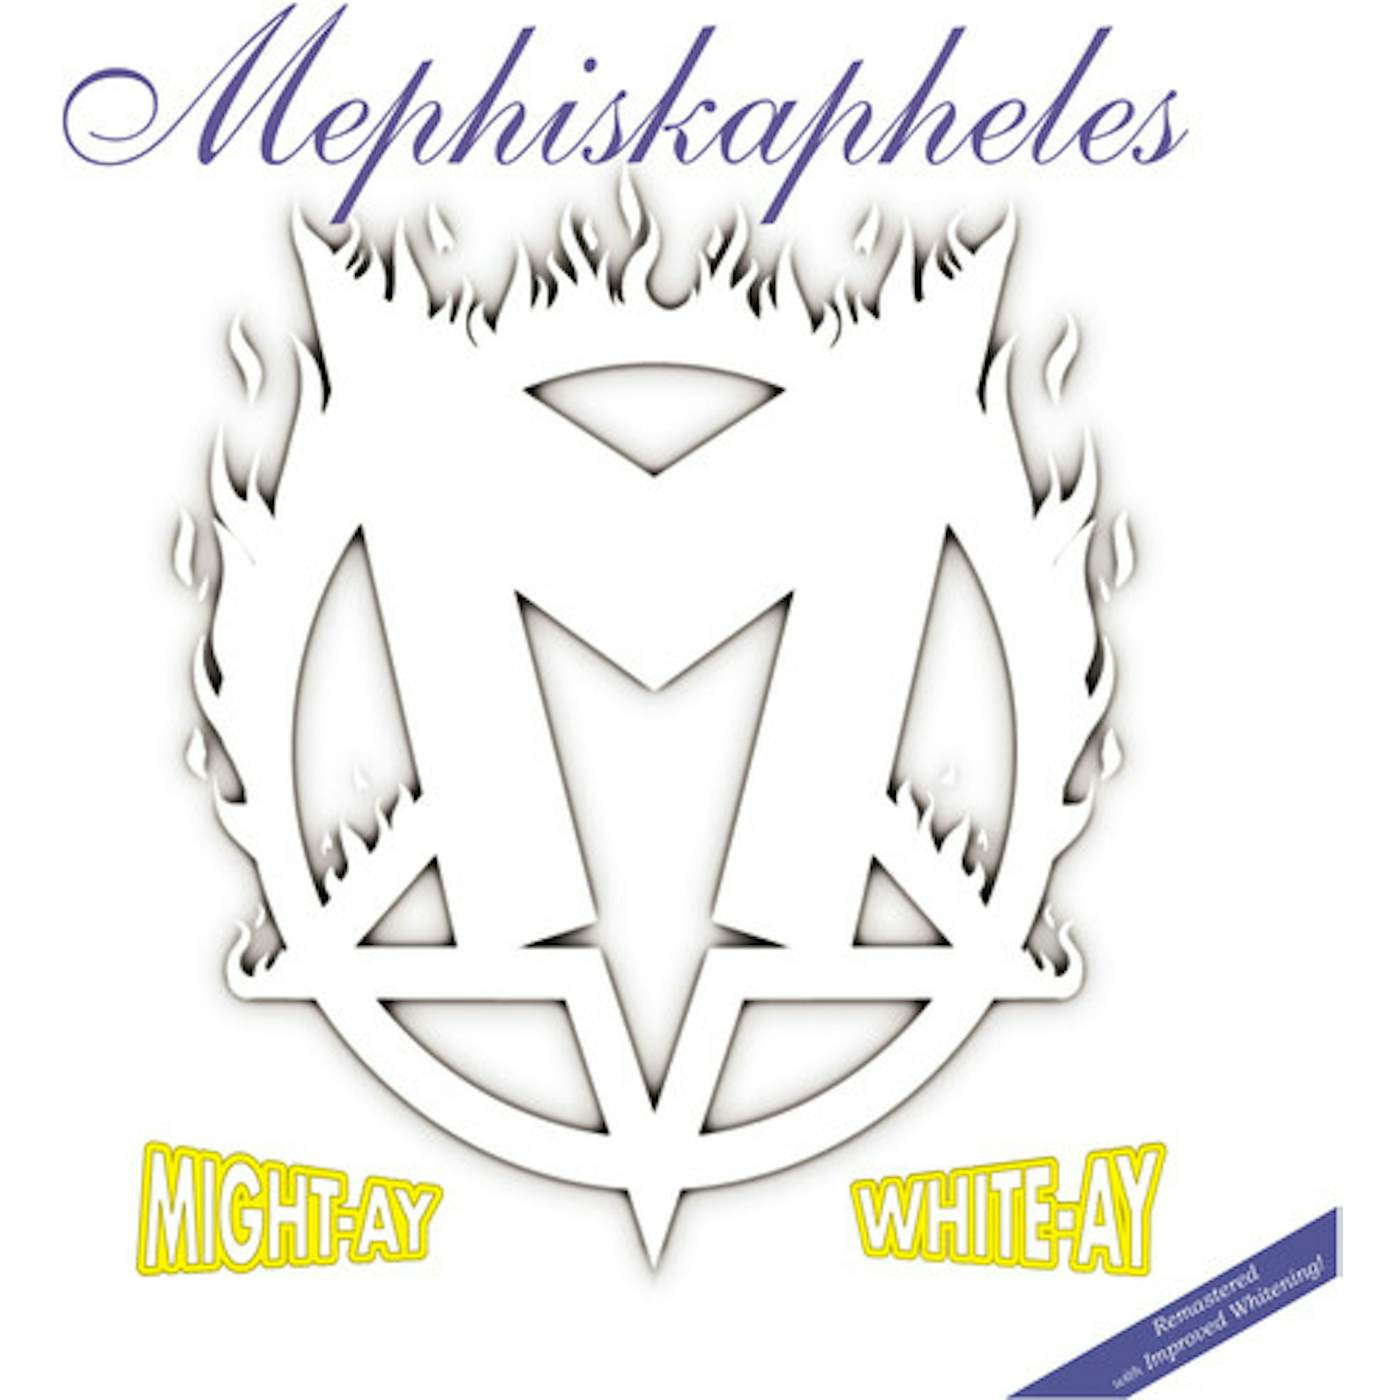 Mephiskapheles MIGHT-AY WHITE-AY Vinyl Record